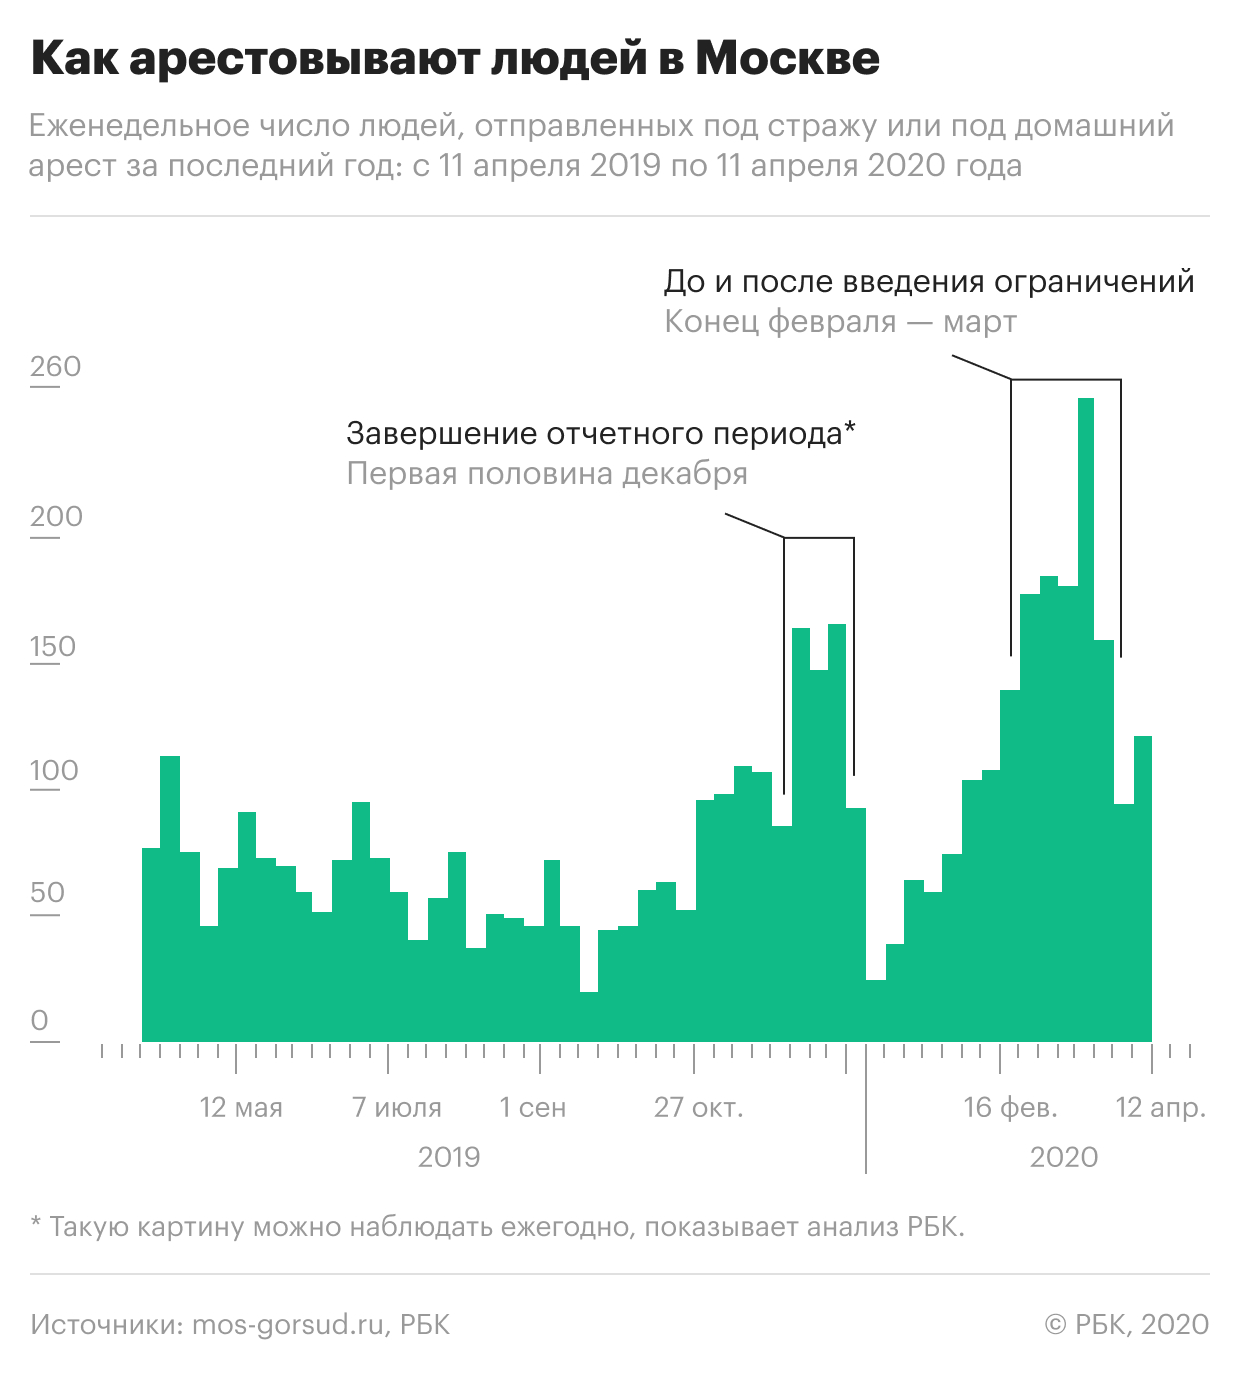 Суды во время эпидемии в Москве поставили рекорд по количеству арестов